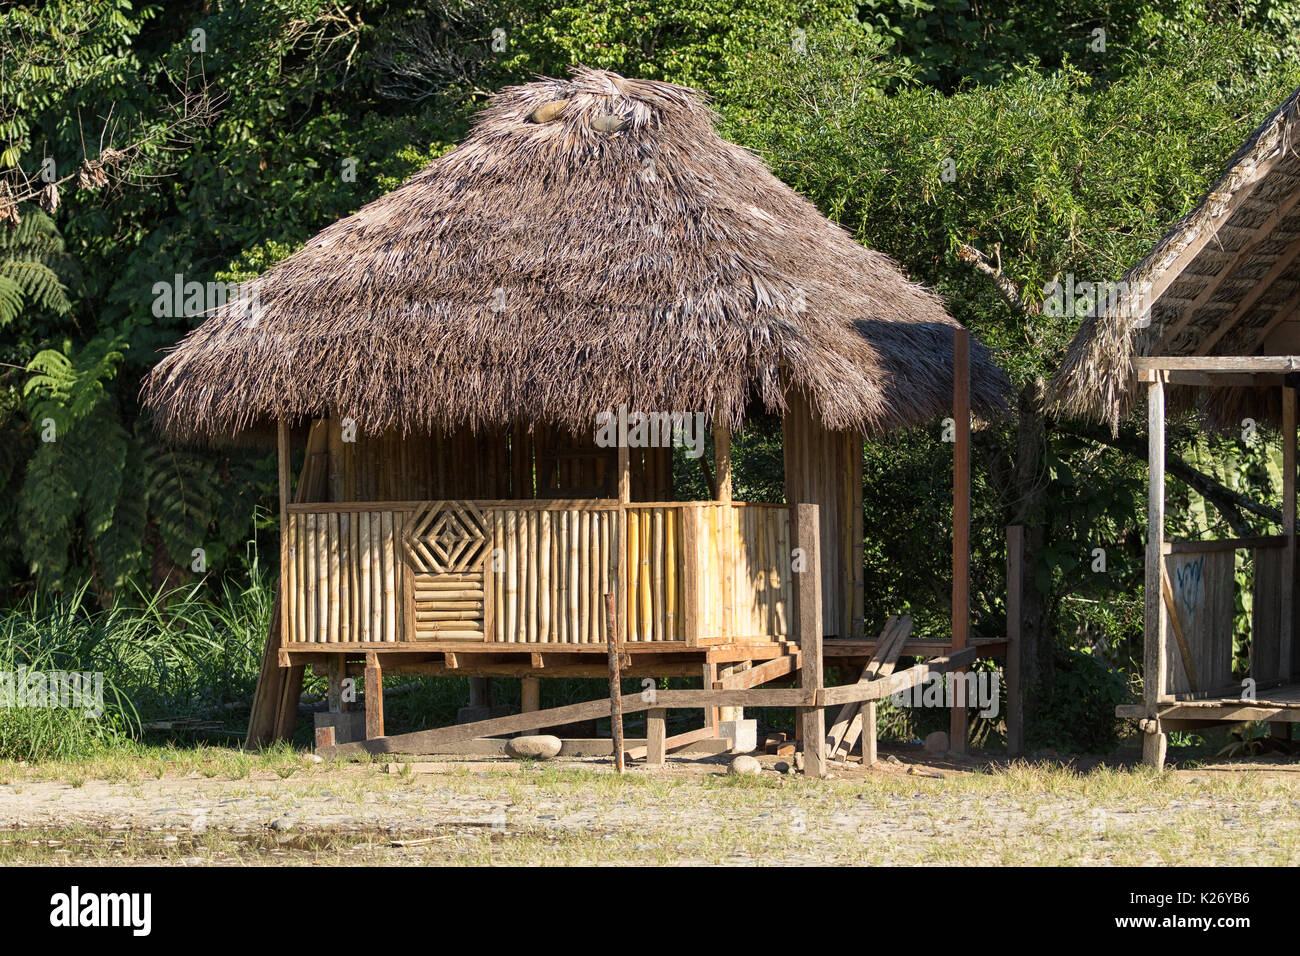 June 6, 2017 Misahualli, Ecuador: small habitation shack made of bamboo in the Amazon area Stock Photo